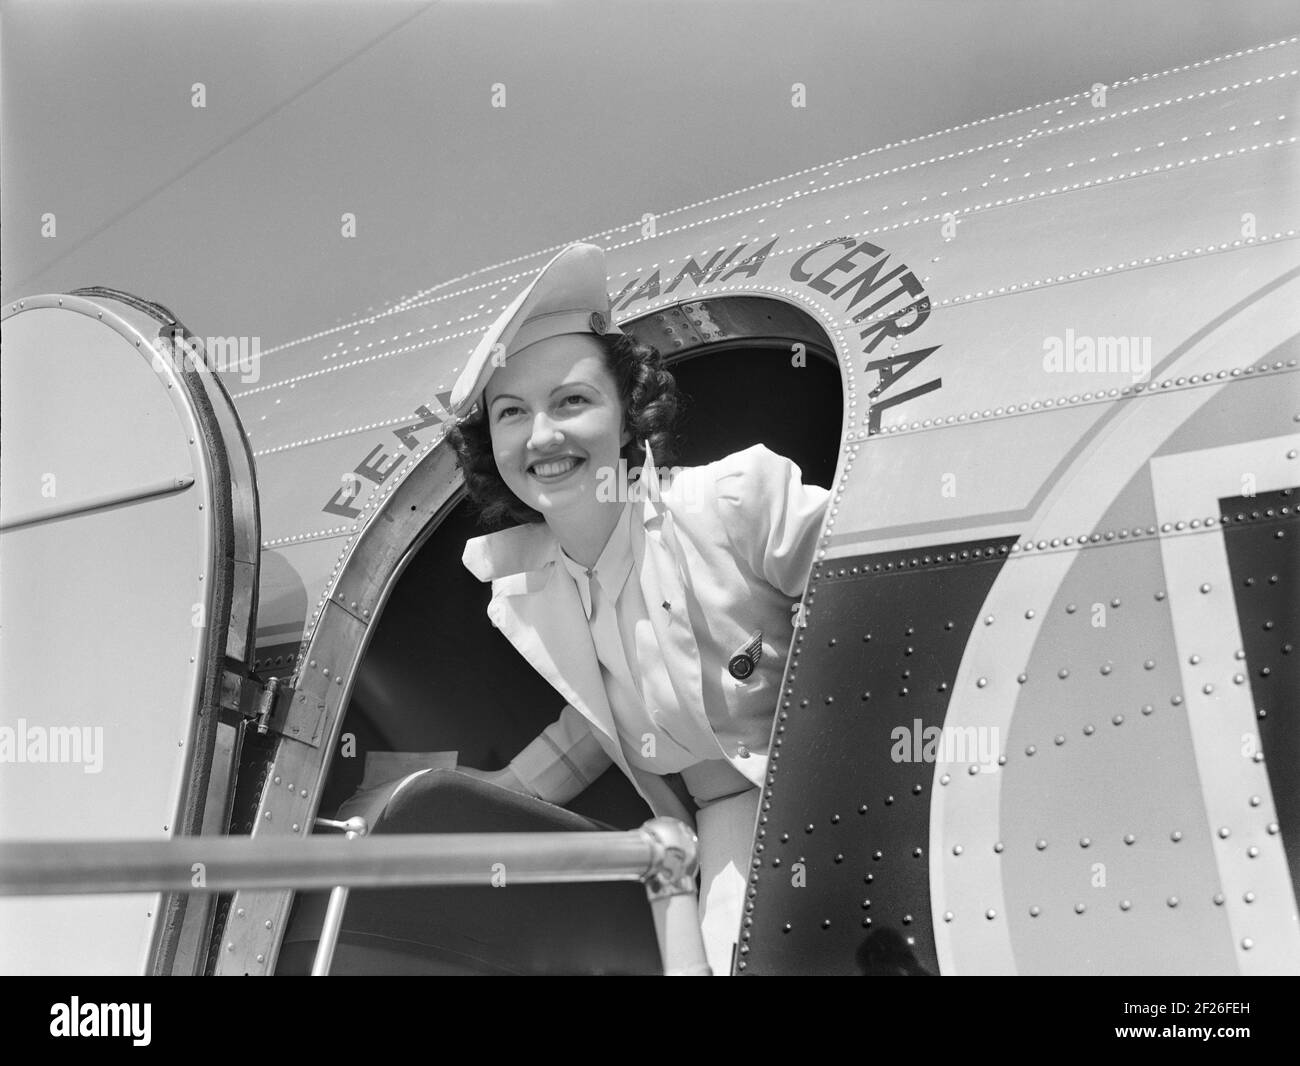 Azafata, Eastern Airlines, Aeropuerto Municipal, Washington, D.C. EE.UU., Jack Delano, Oficina de Información de Guerra de EE.UU., julio de 1941 Foto de stock